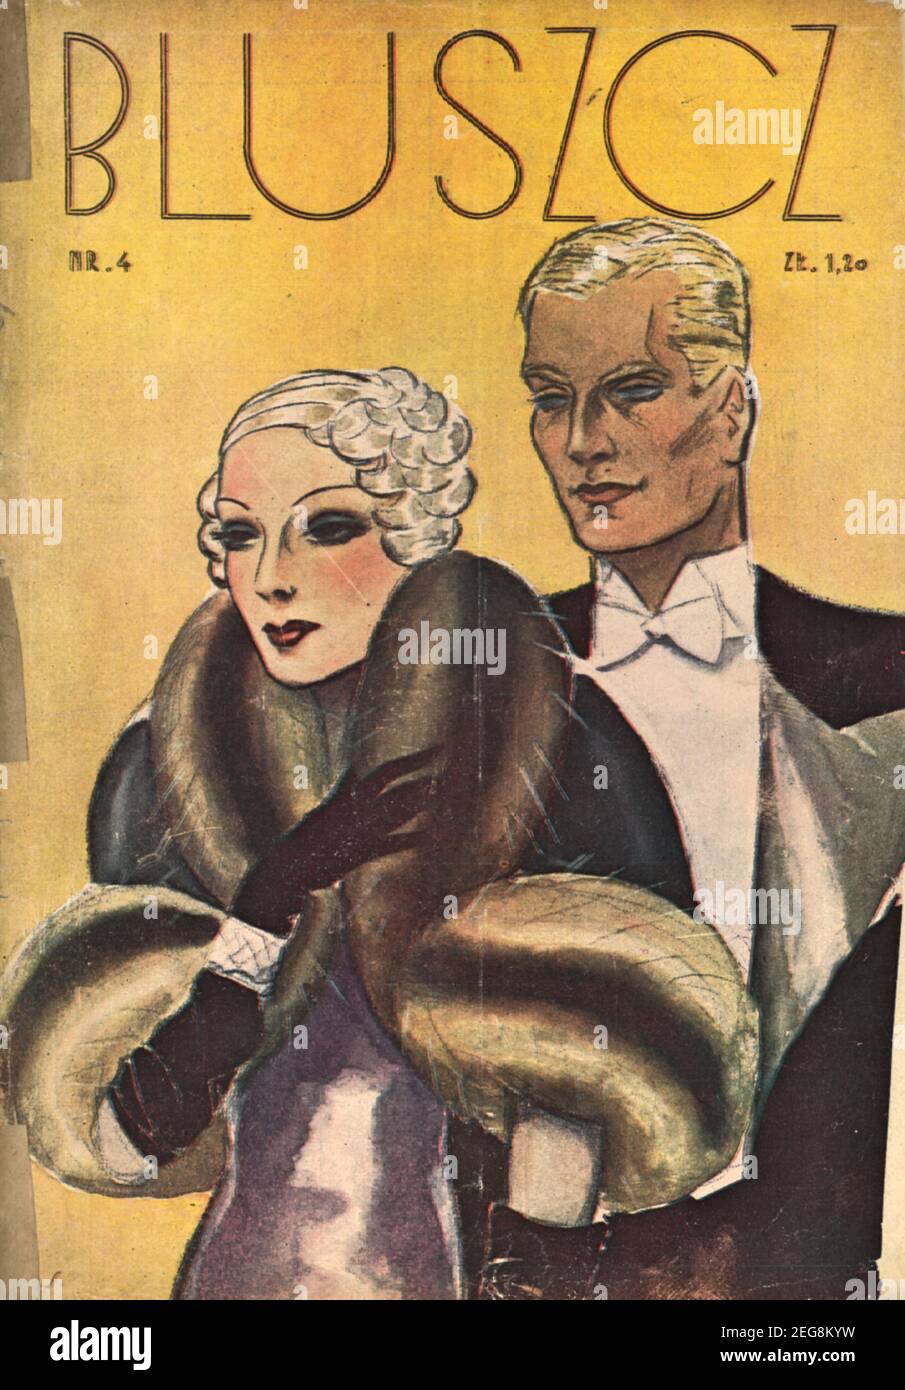 Okładka przedwojennego magazynu dla kobiet Bluszcz 1933, lata 30te, portada de la revista polaca de preguerra para mujeres Bluszcz estilo art decó Foto de stock